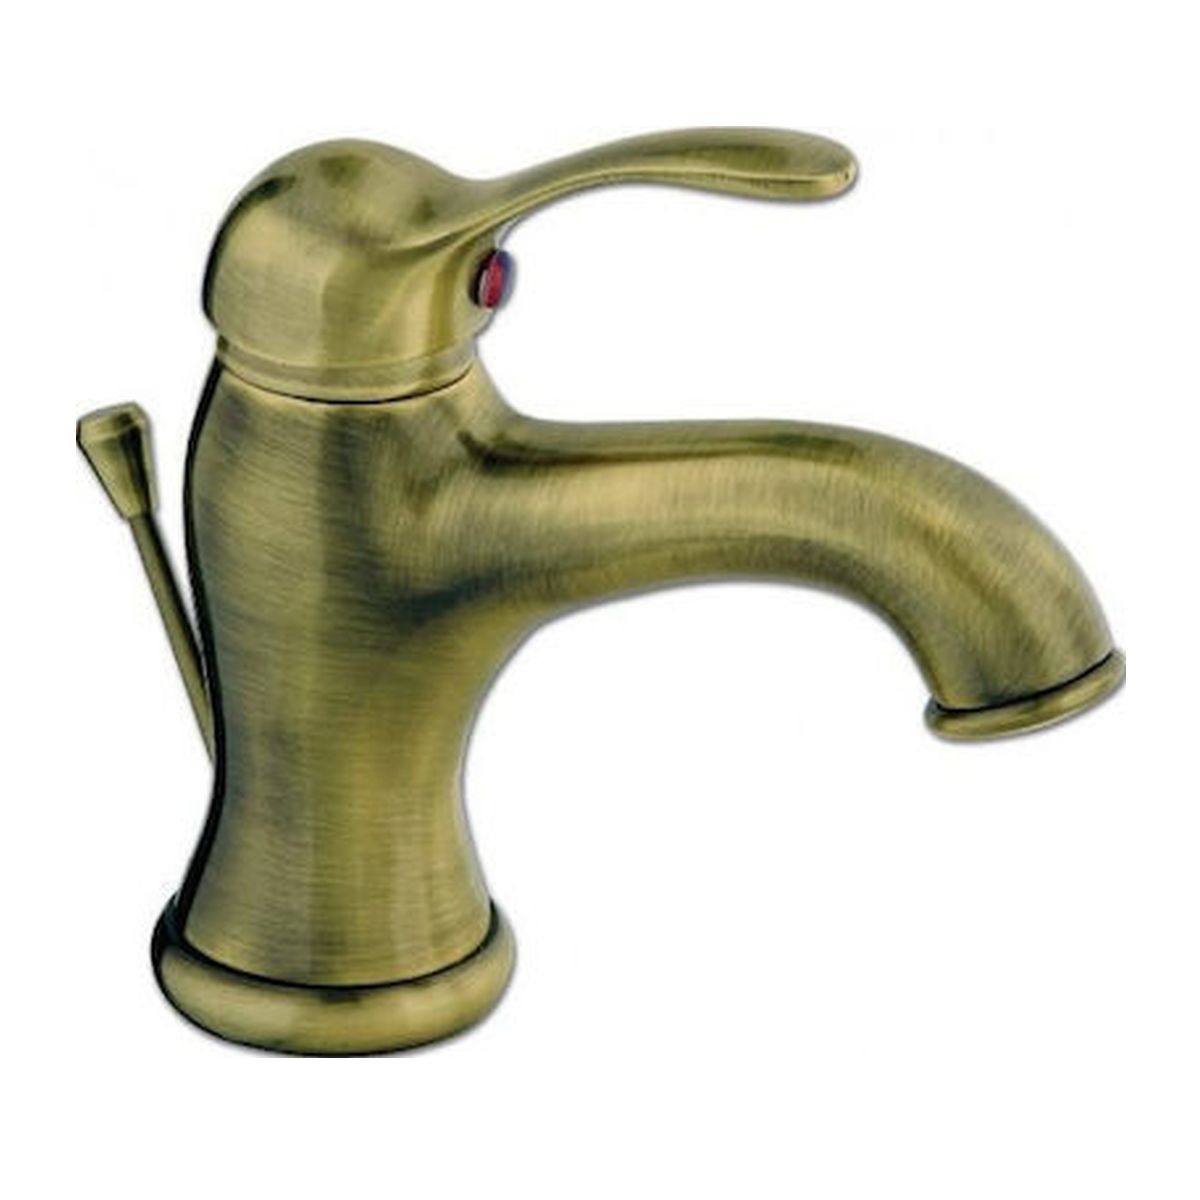 Μπαταρία Νιπτήρος Bronze 18-100/2 Miro Ideal Sanitary Ware Viospiral